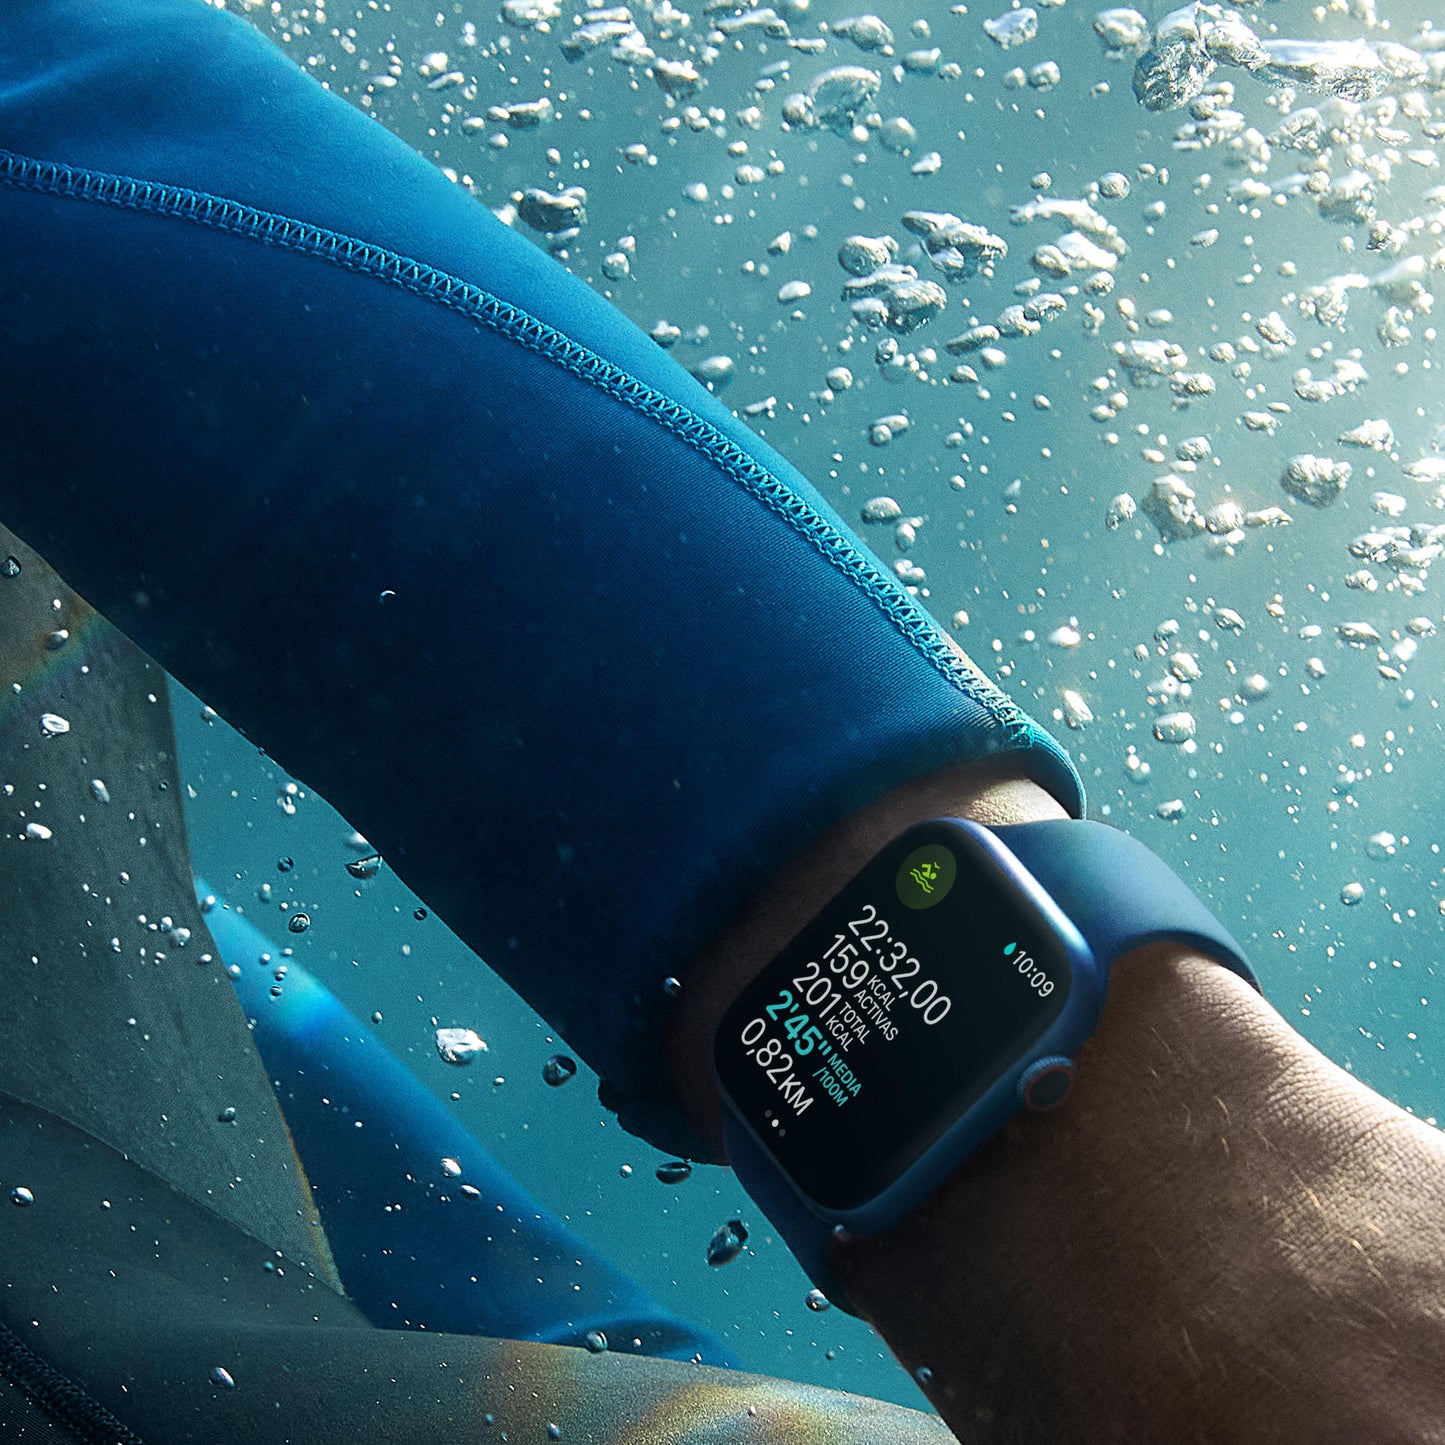 Apple Watch Series 7 (GPS) - Caja de aluminio en color medianoche de 45 mm - Correa deportiva en color medianoche - Talla única